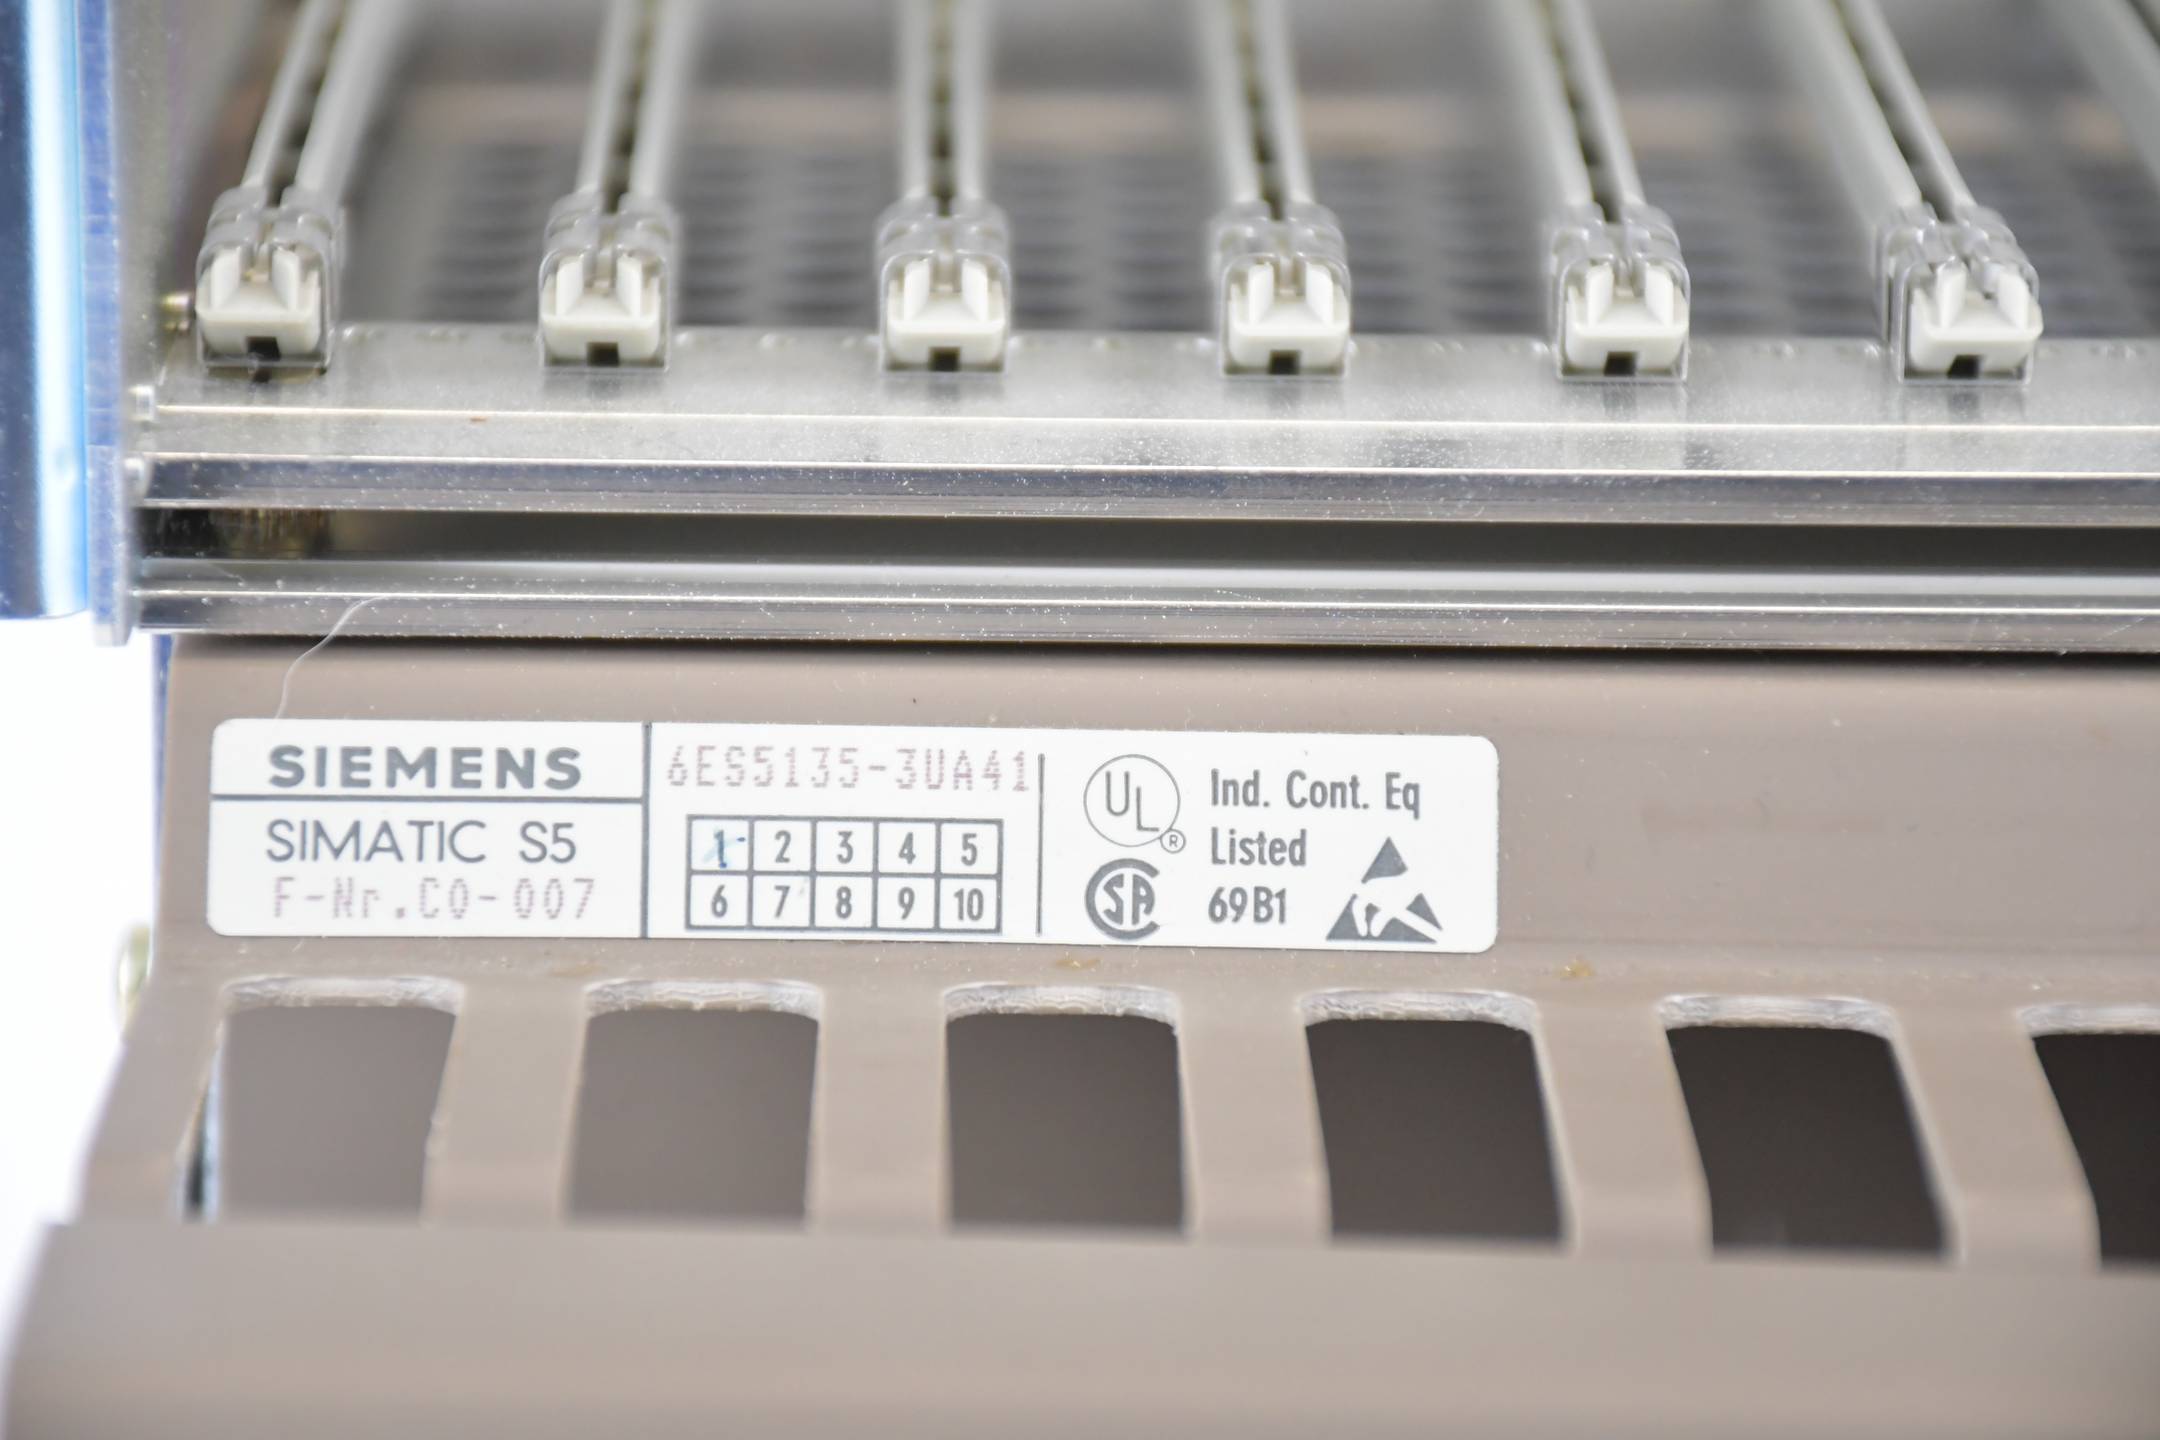 Siemens simatic S5 ZG 135U 6ES5135-3UA41 ( 6ES5 135-3UA41 ) inkl. 6ES5955-3NA12